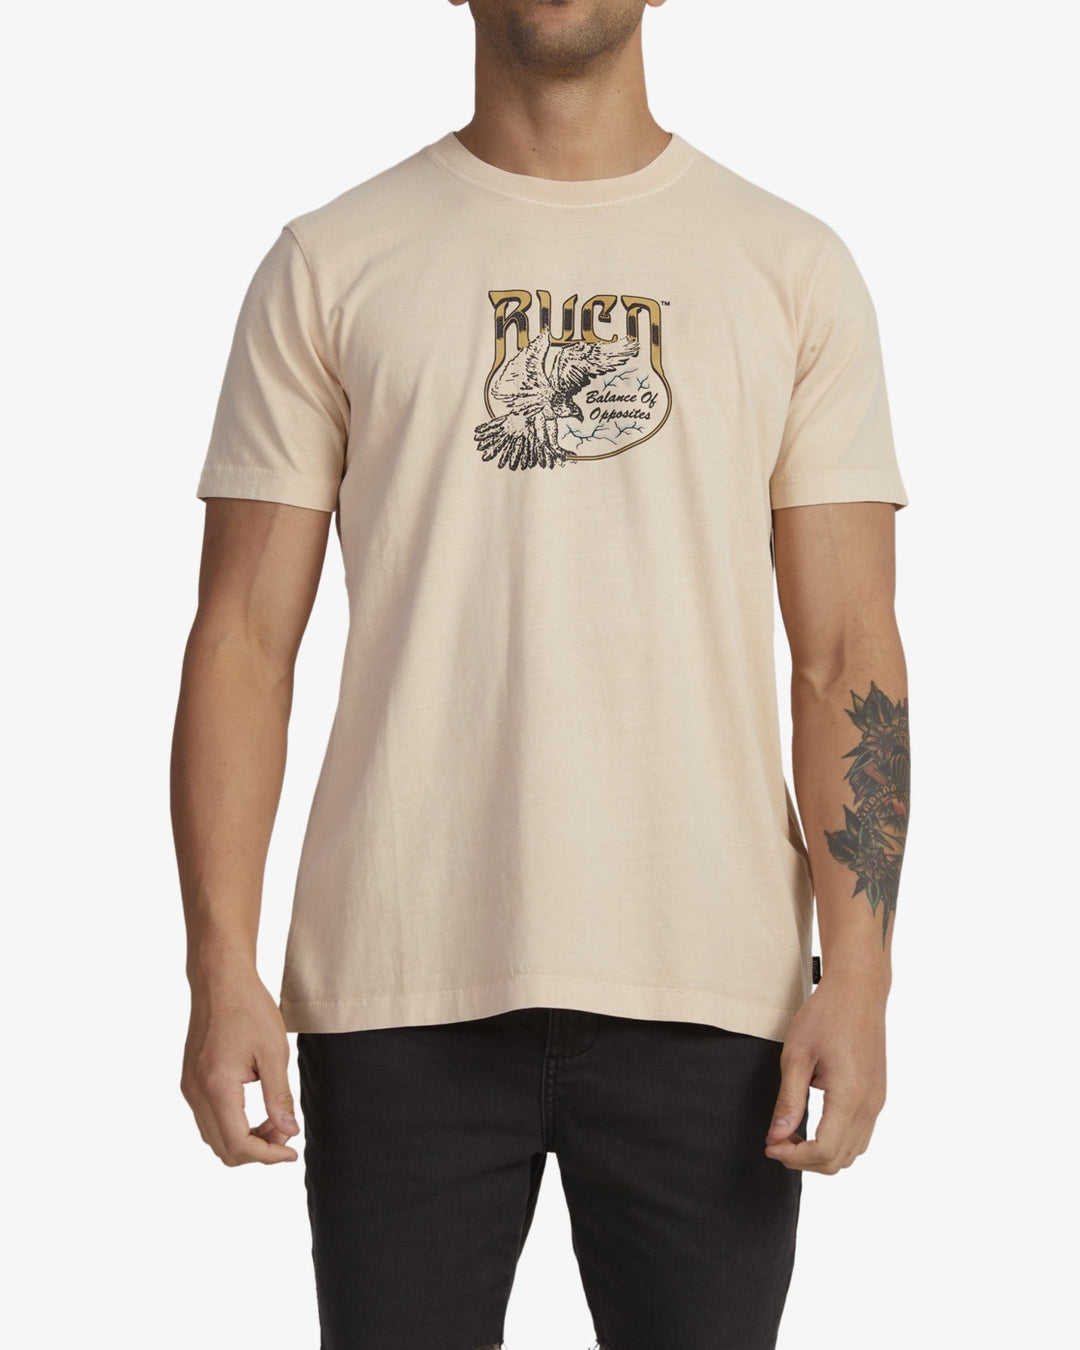 Dirty Bird T-Shirt